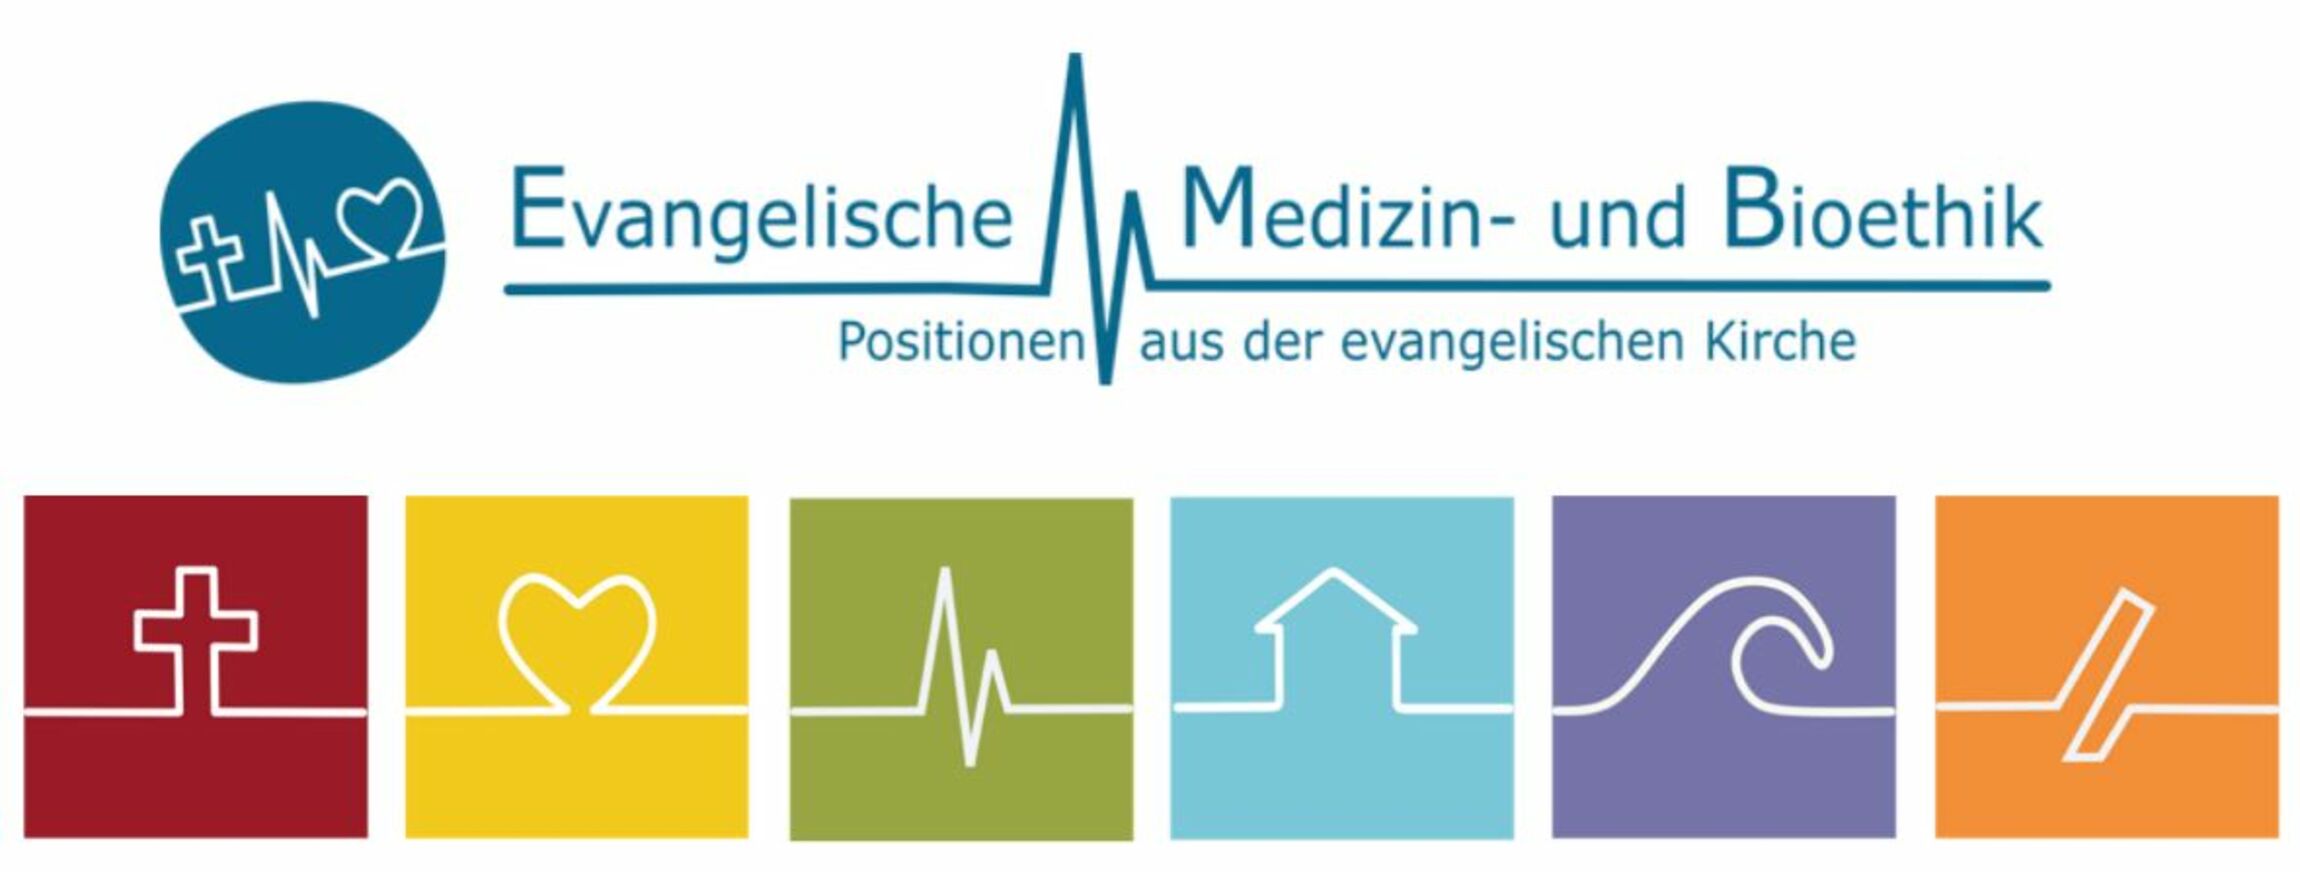 Evangelische Medizinethik 2021